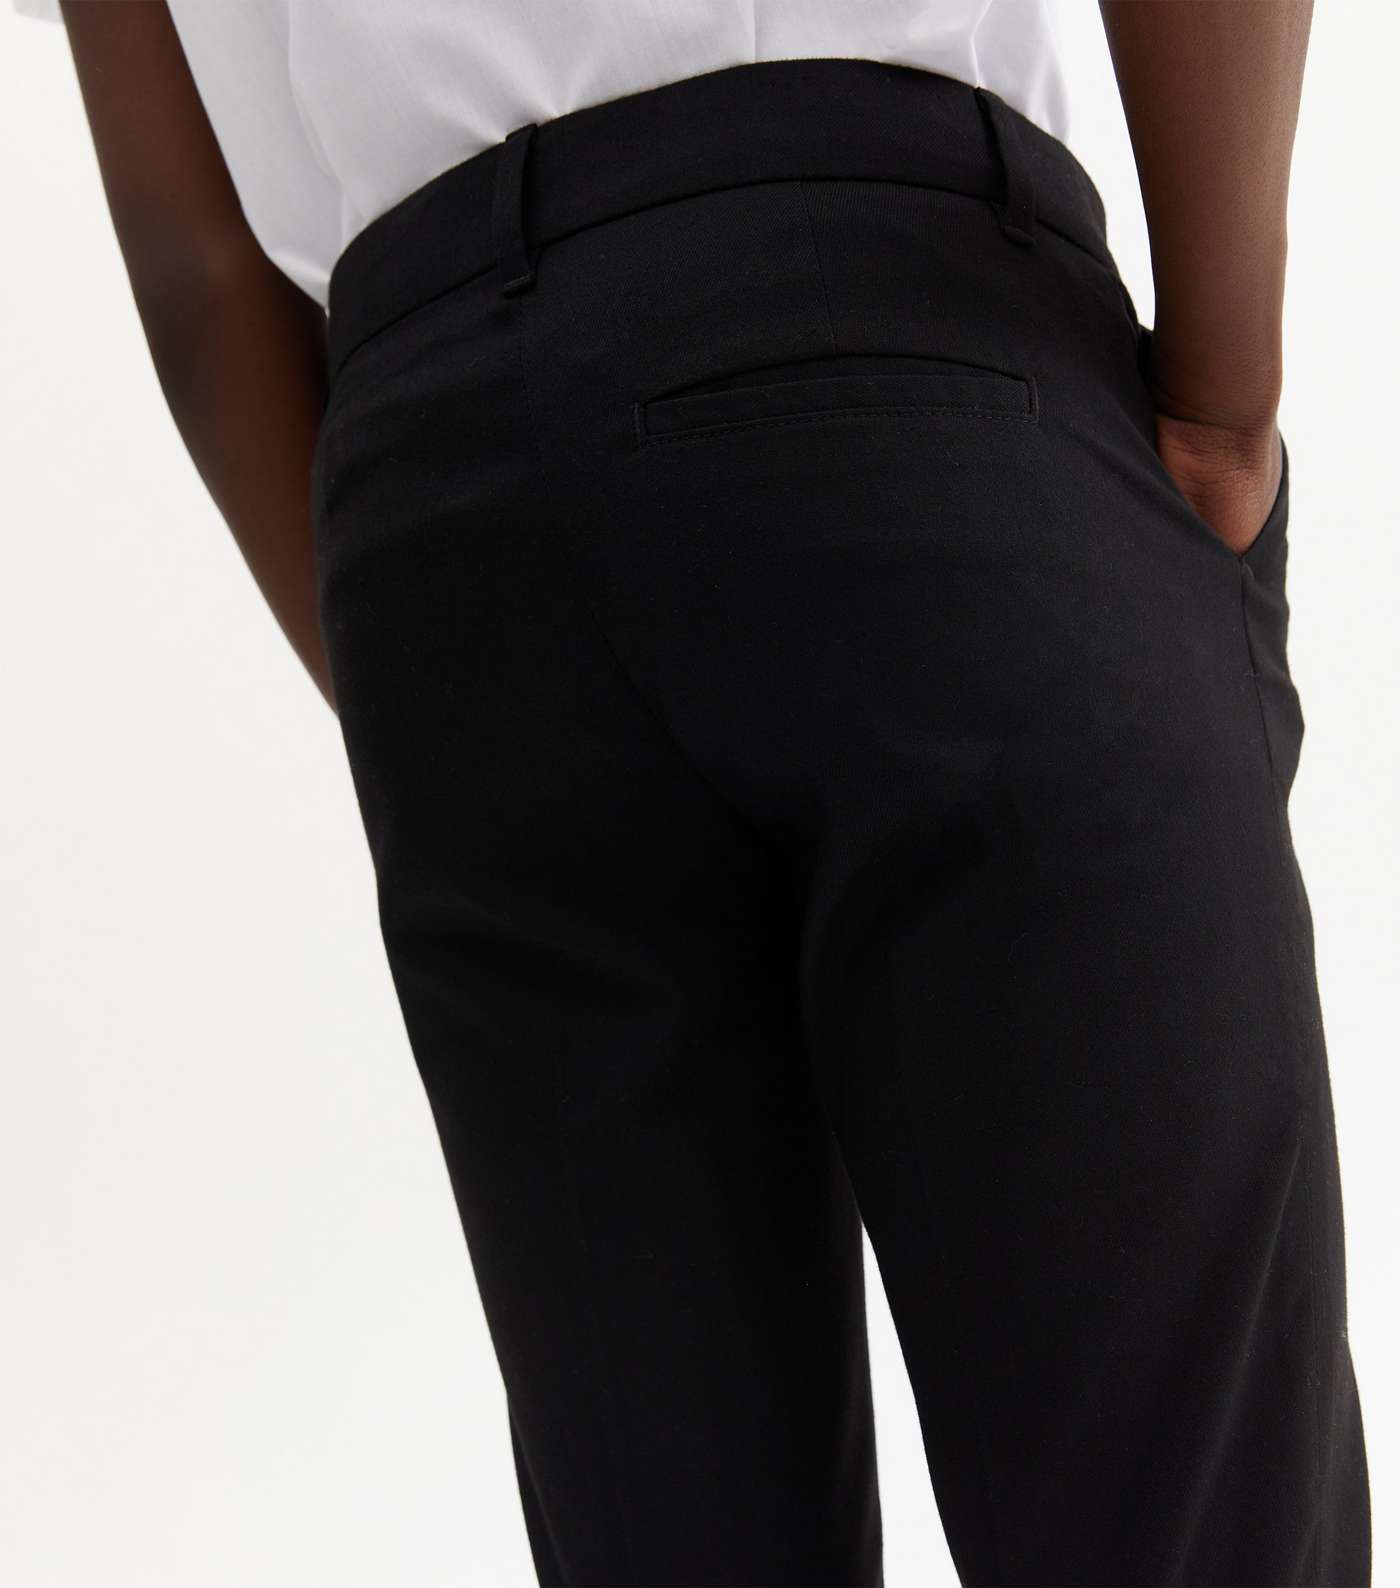 Boys Black Adjustable Waist Skinny School Trousers Image 2